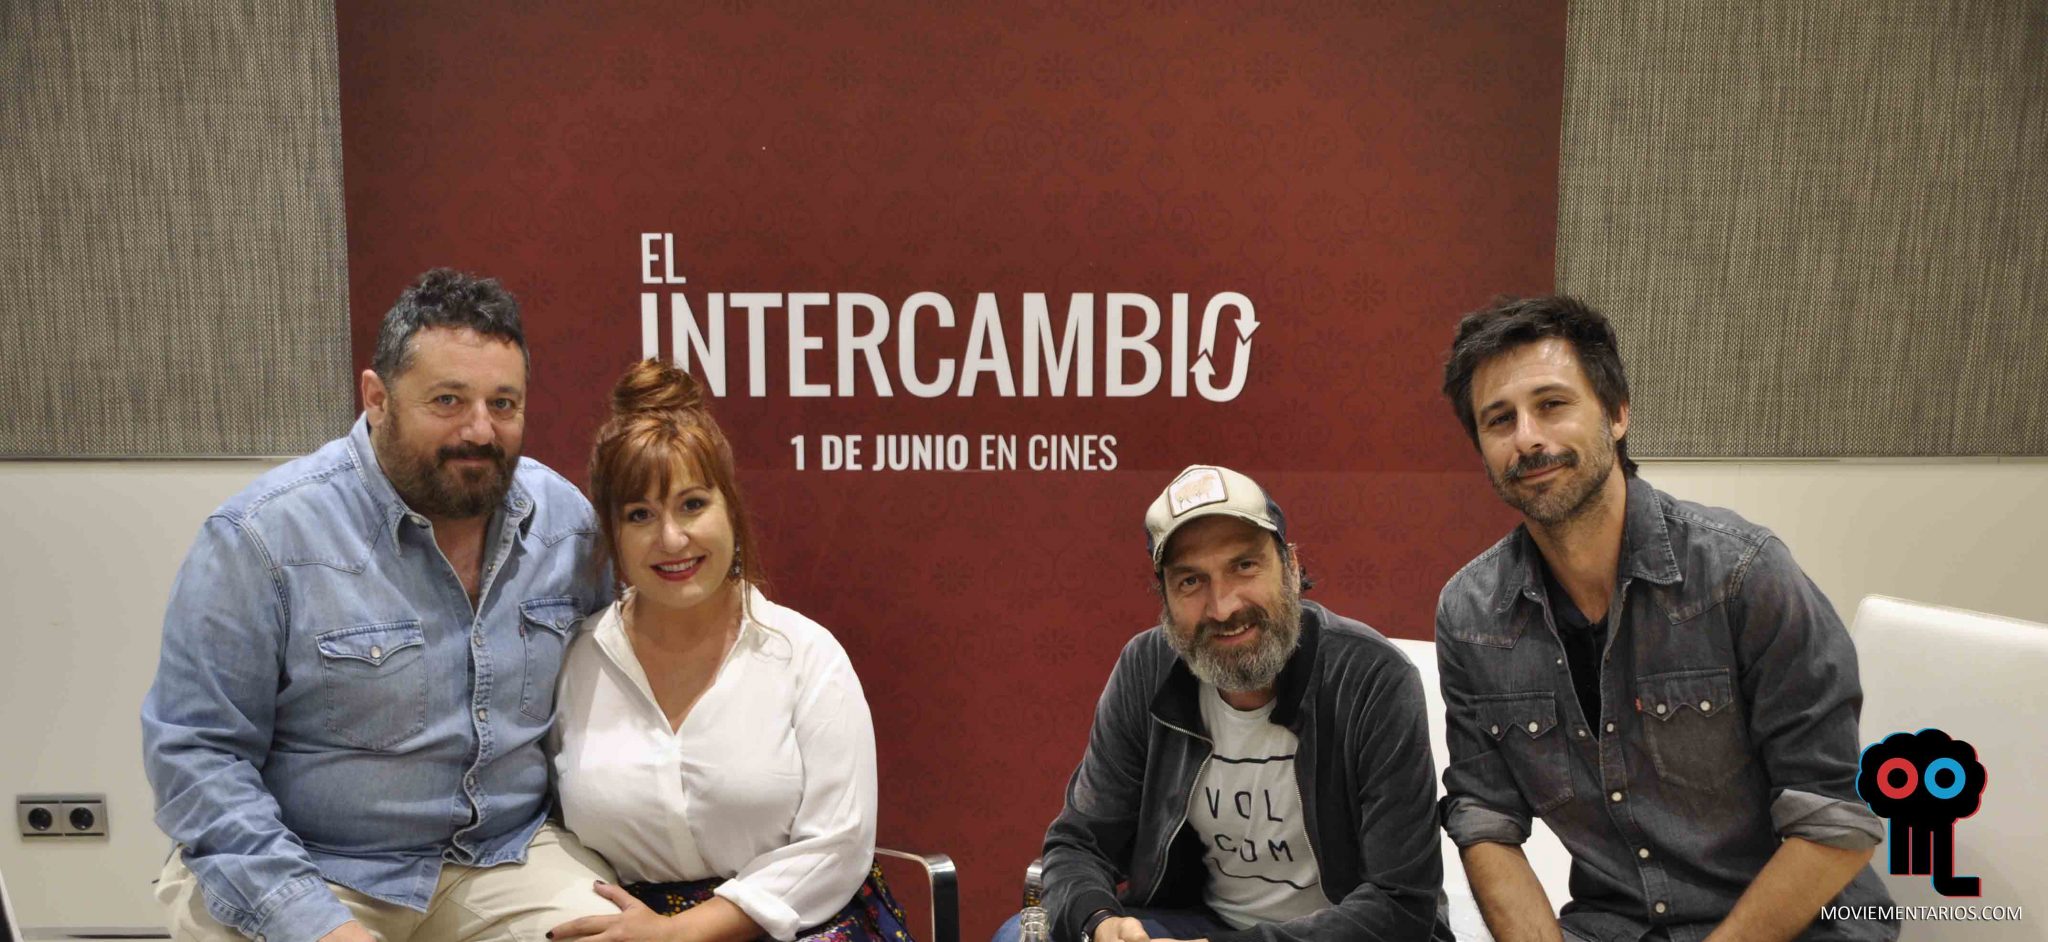 Entrevistamos a Ignacio Nacho, Pepón Nieto, Hugo Silva y Natalia Roig